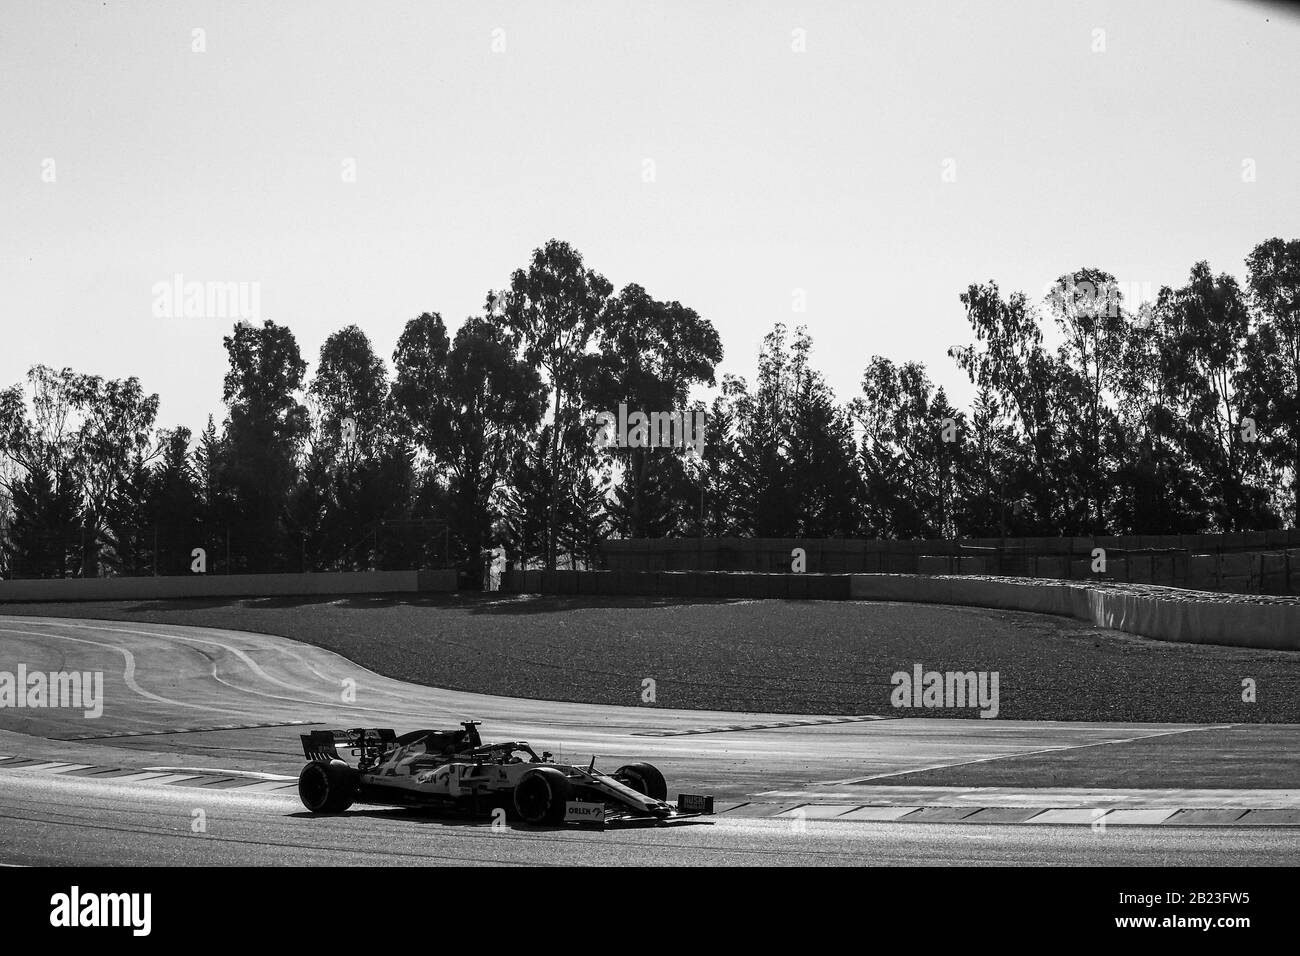 Antonio giovinazzi (ita) alfa romeo Racing c39 durante i test pre-stagione 2020, Barcellona (Spagna), Italia, 21 Feb 2020, Motors Formula 1 Championship Foto Stock